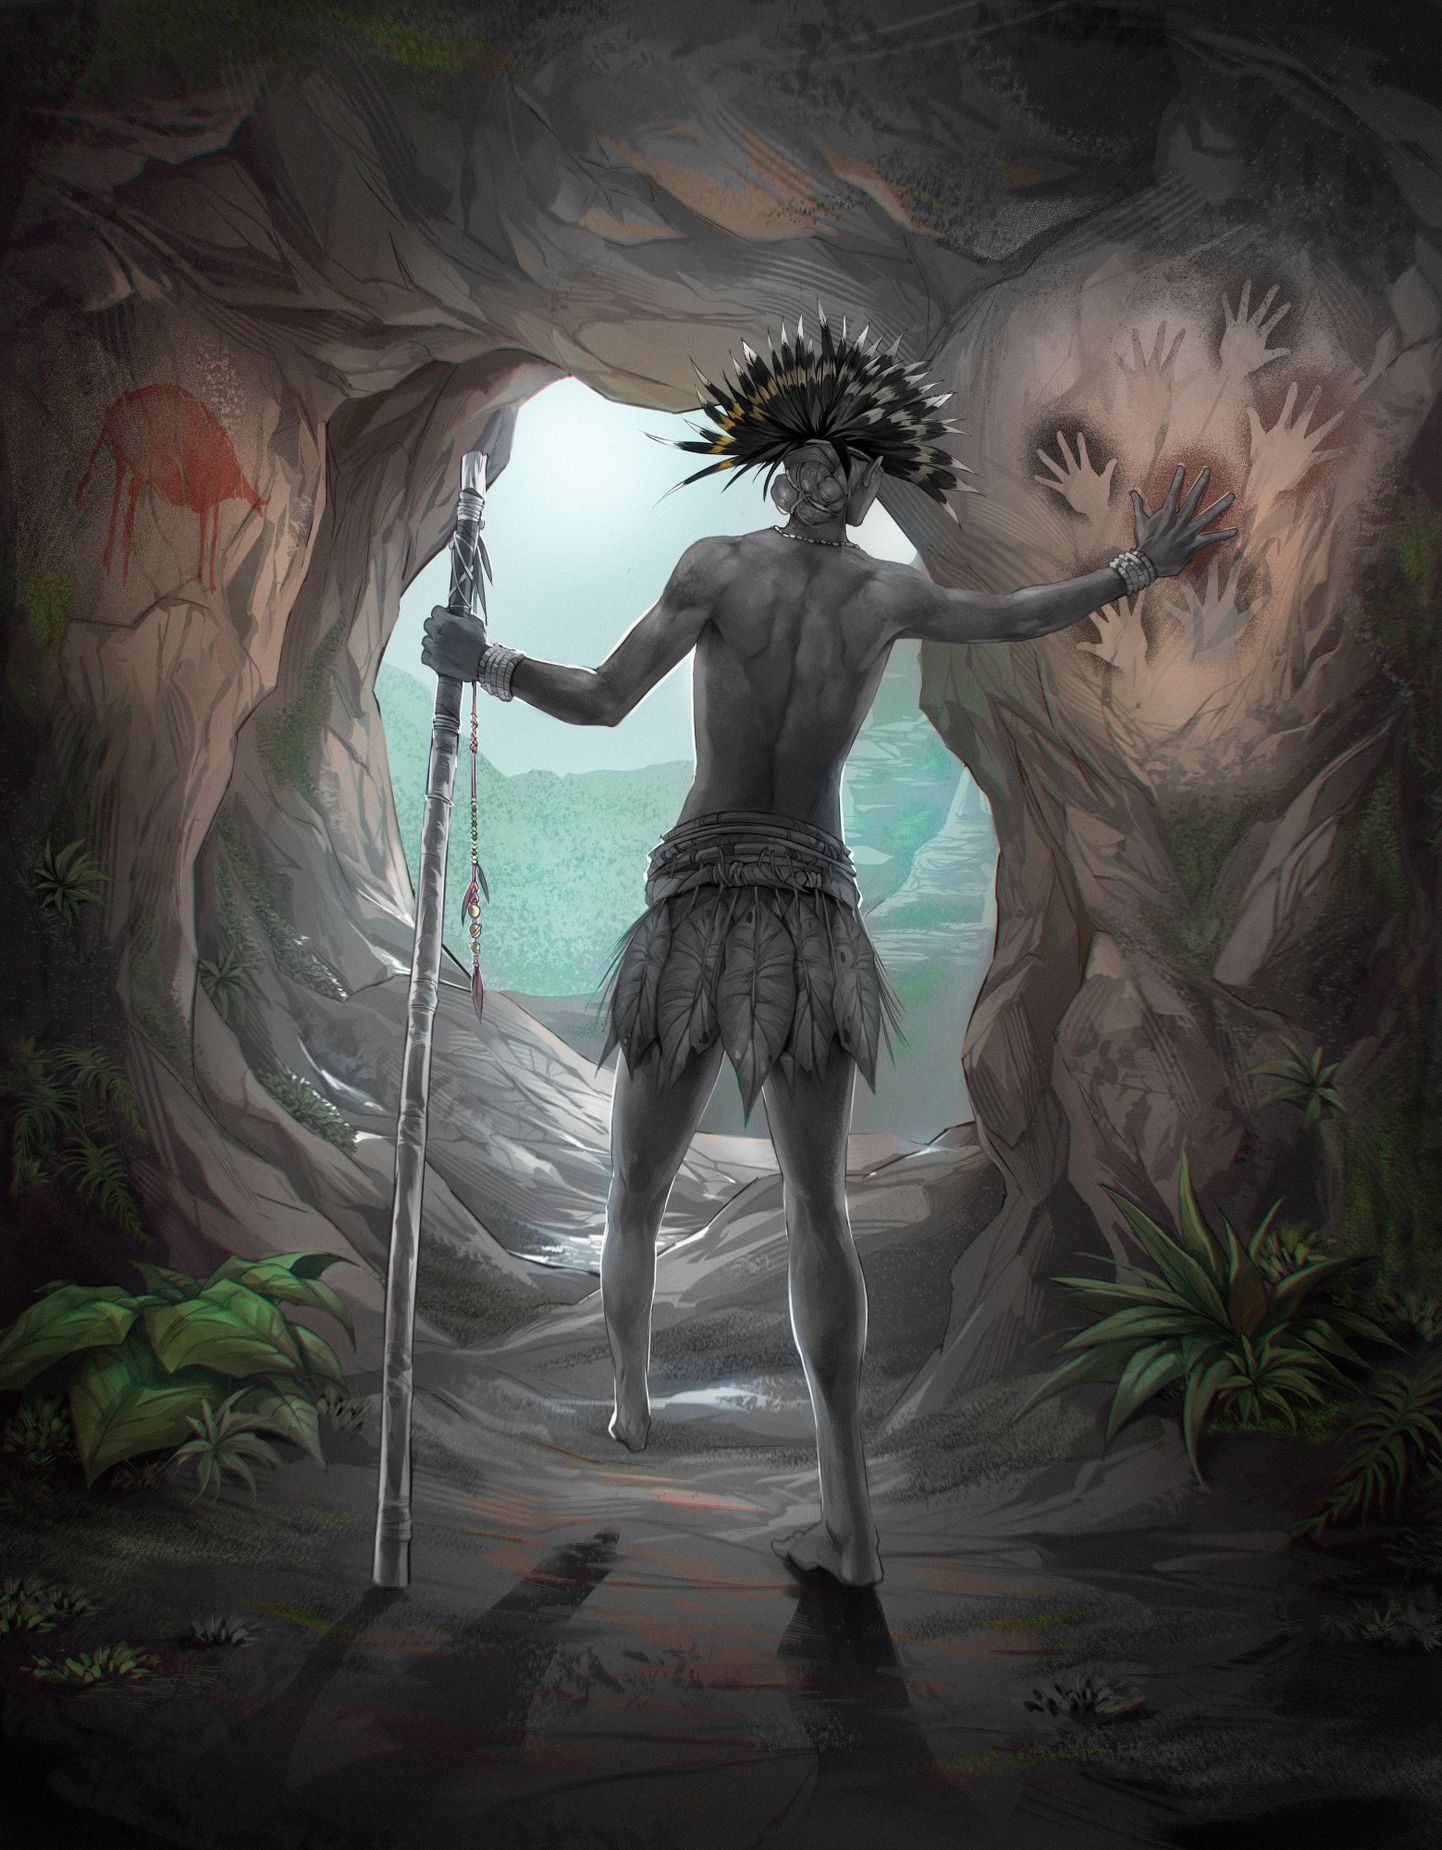 Kunstniku loodud kujutis Tebo1, isikust, kes elas Borneo saarel 31 000 aasta eest ning kellel oli puudu vasaku jala alaosa.